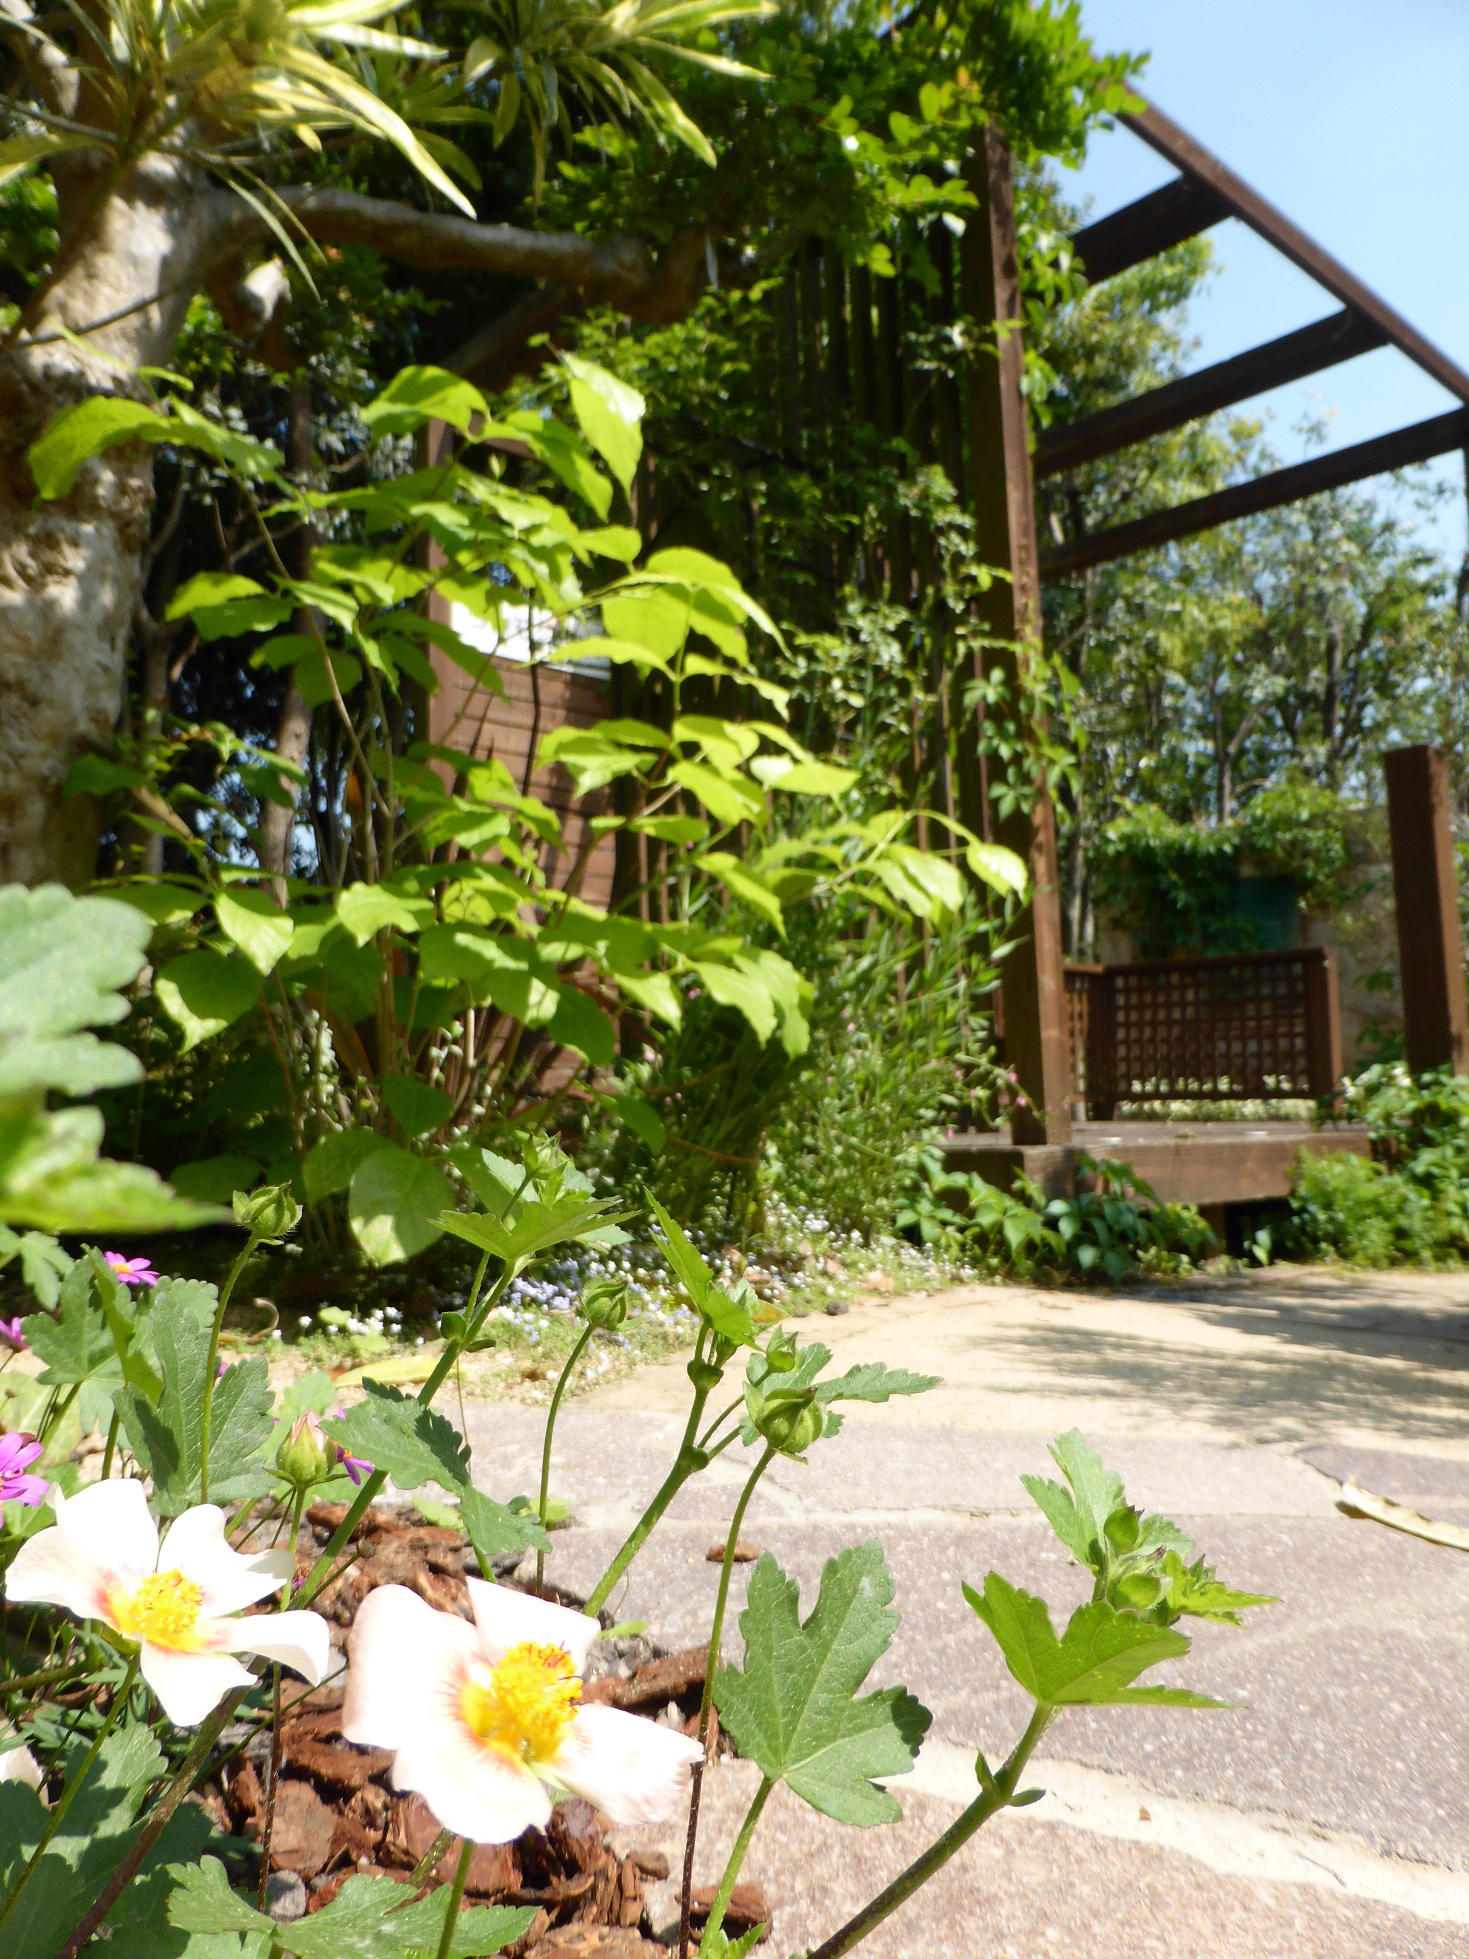 ﾓﾃﾞﾙｶﾞｰﾃﾞﾝ 花盛りで可愛い庭になってます エクステリア ガーデン 外構 造園 大分市 グランド工房